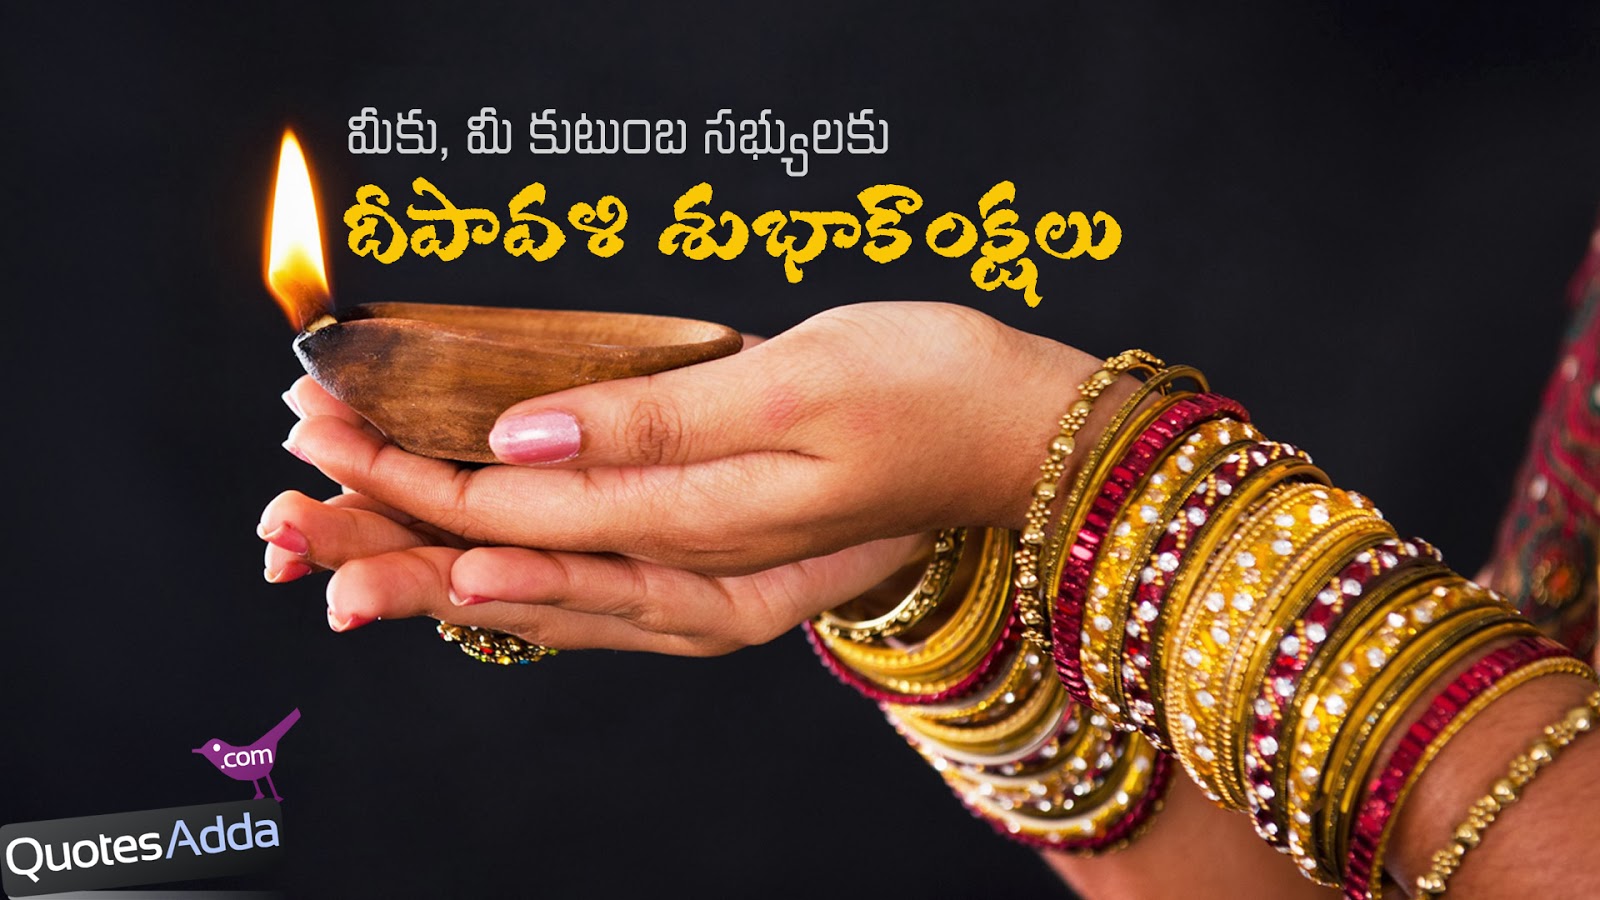 Telugu Deepavali Quotes, Diwali Quotes in Telugu Language, Deepavali ...